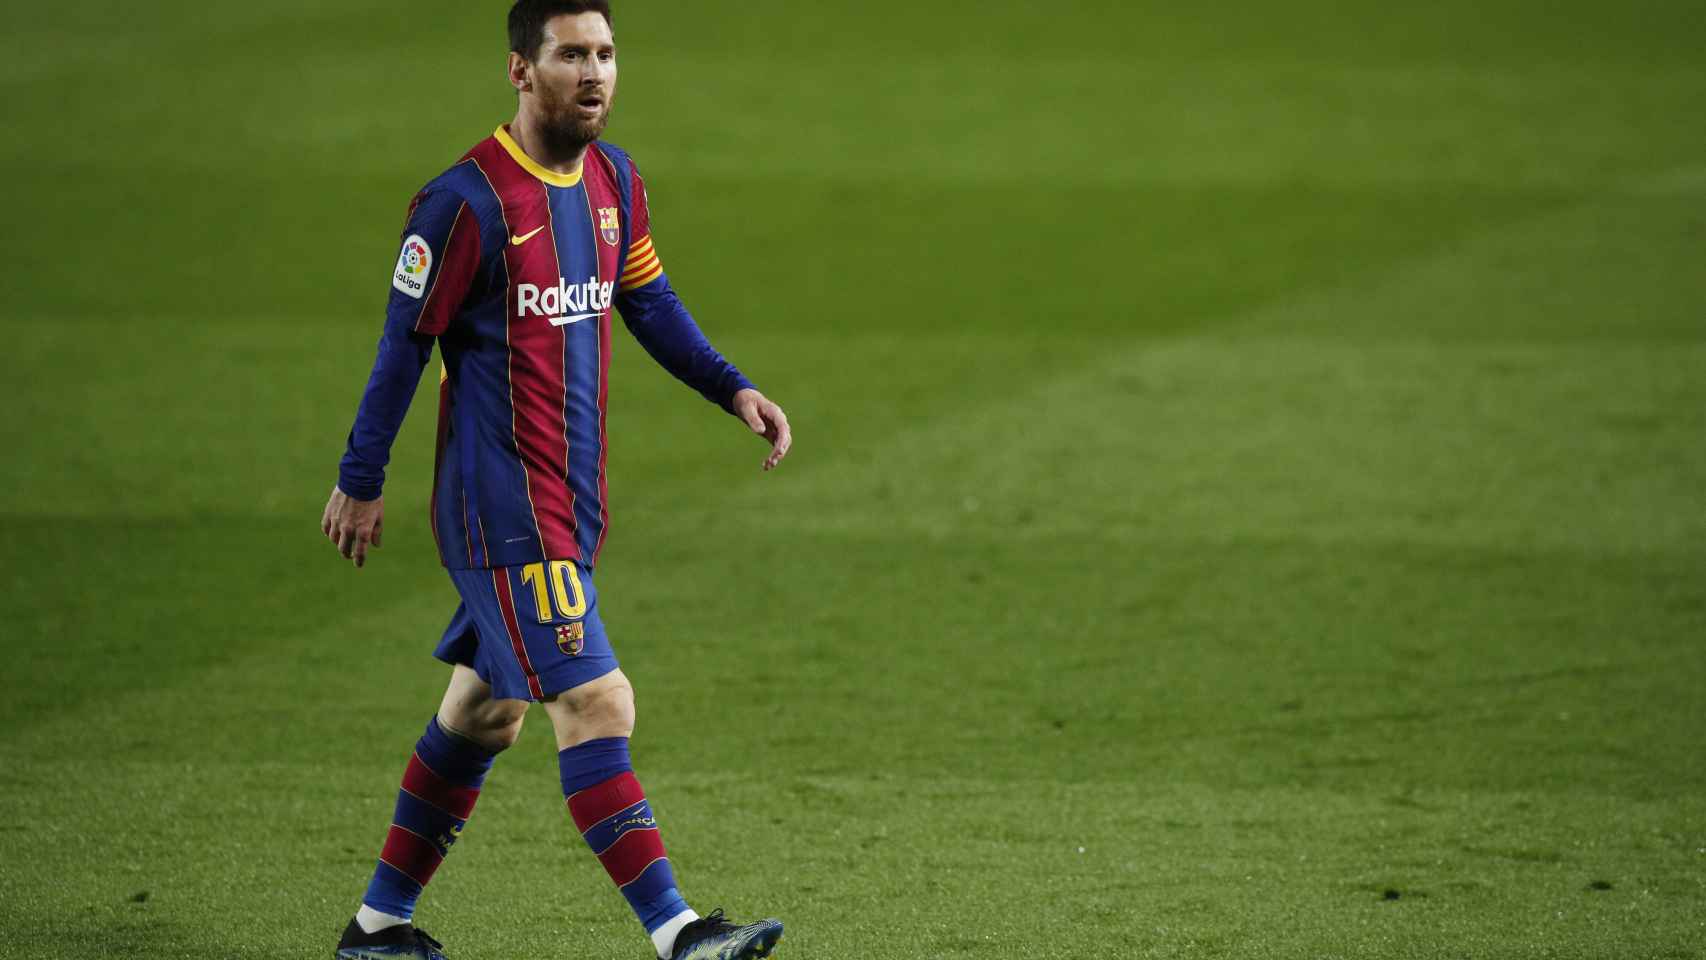 Leo Messi, andando por el campo en mitad del partido